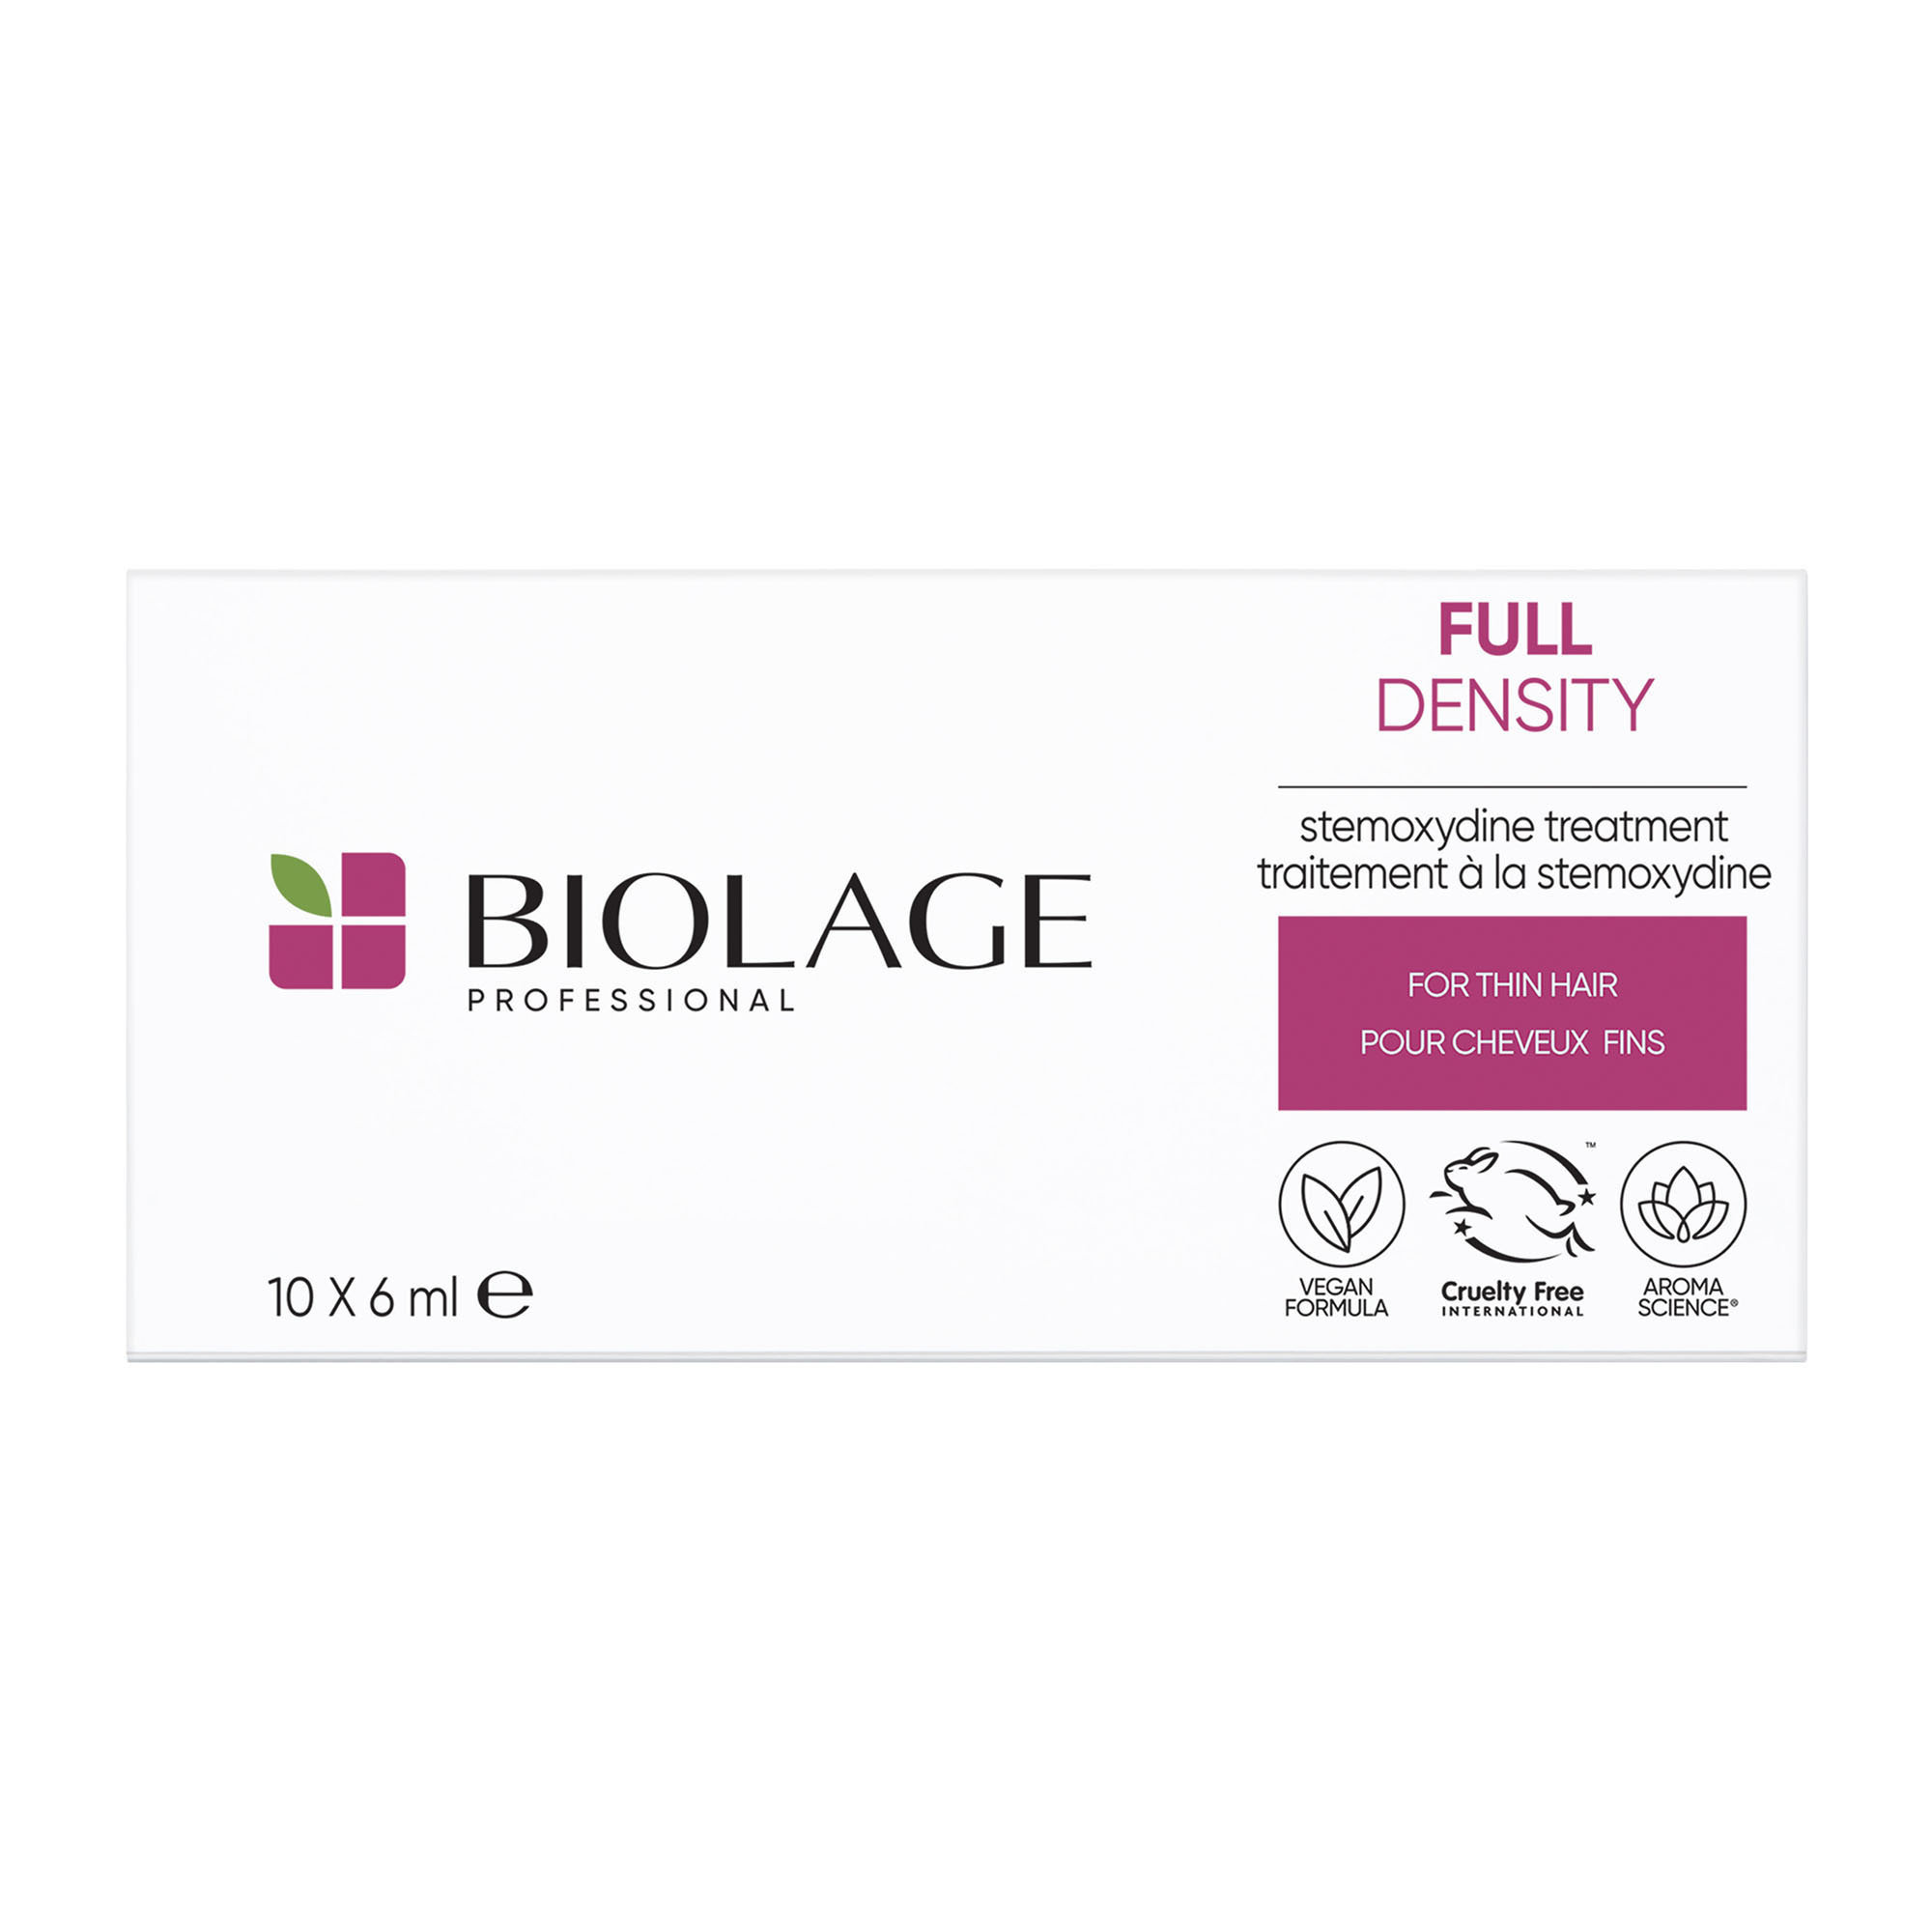 Biolage Kúra pre rednúce vlasy Full Density (Stemoxydine Treatment) 10 x 6 ml